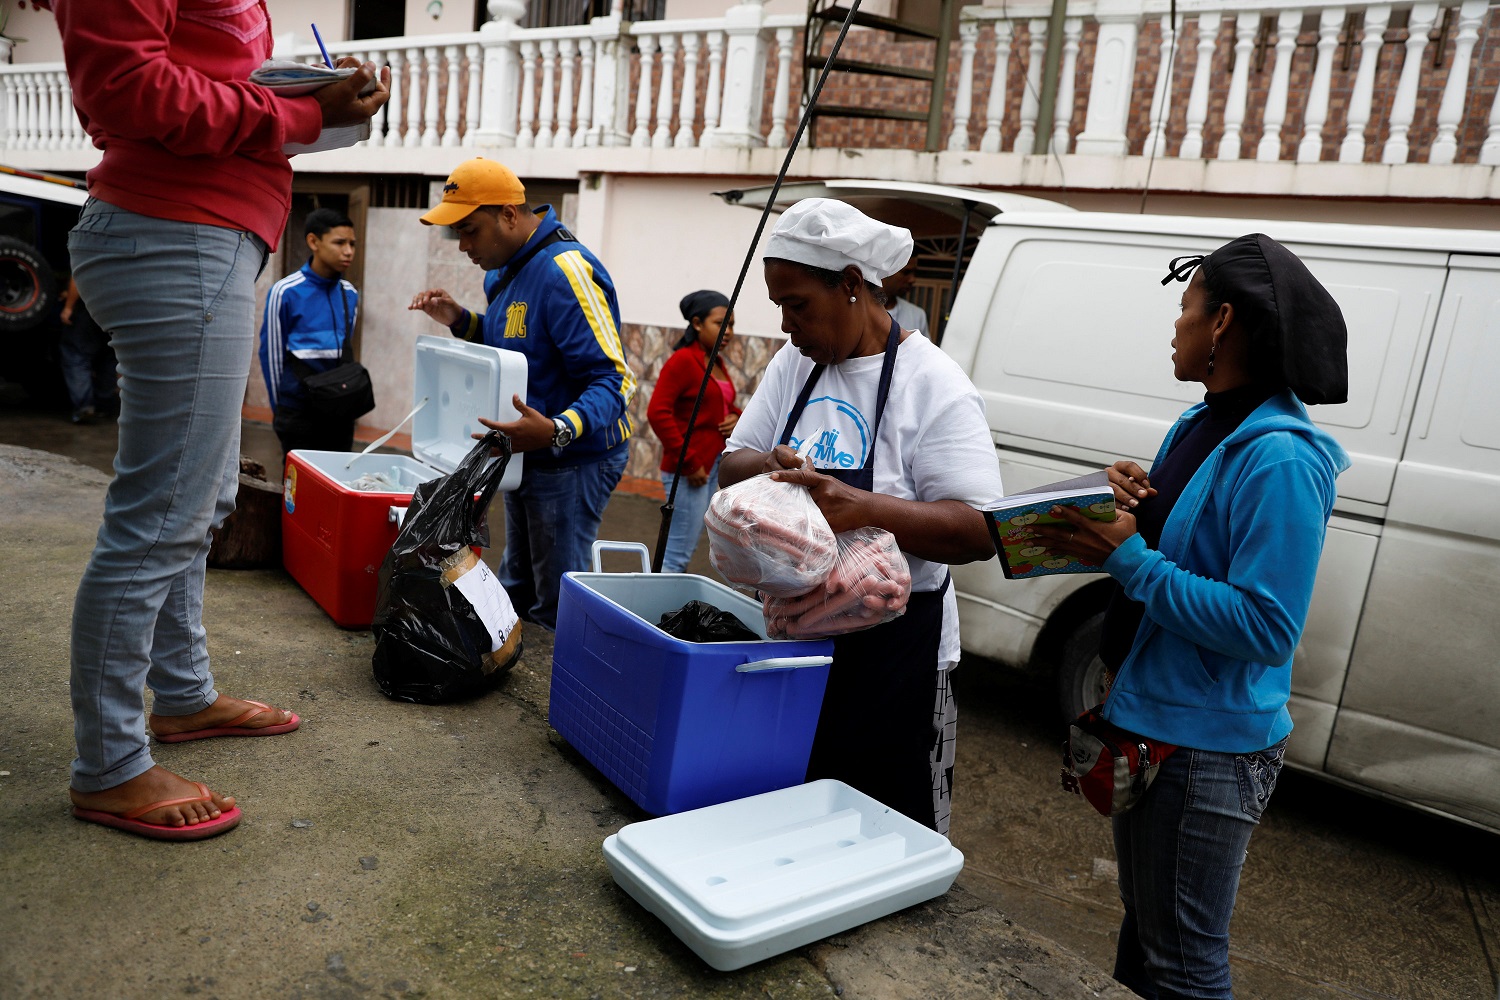 Los partidarios de la oposición que trabajan como voluntarios organizan la comida donada en un comedor para niños, en el barrio La Vega de Caracas, Venezuela, el 23 de mayo de 2017. Foto tomada el 23 de mayo de 2017. REUTERS / Carlos Garcia Rawlins